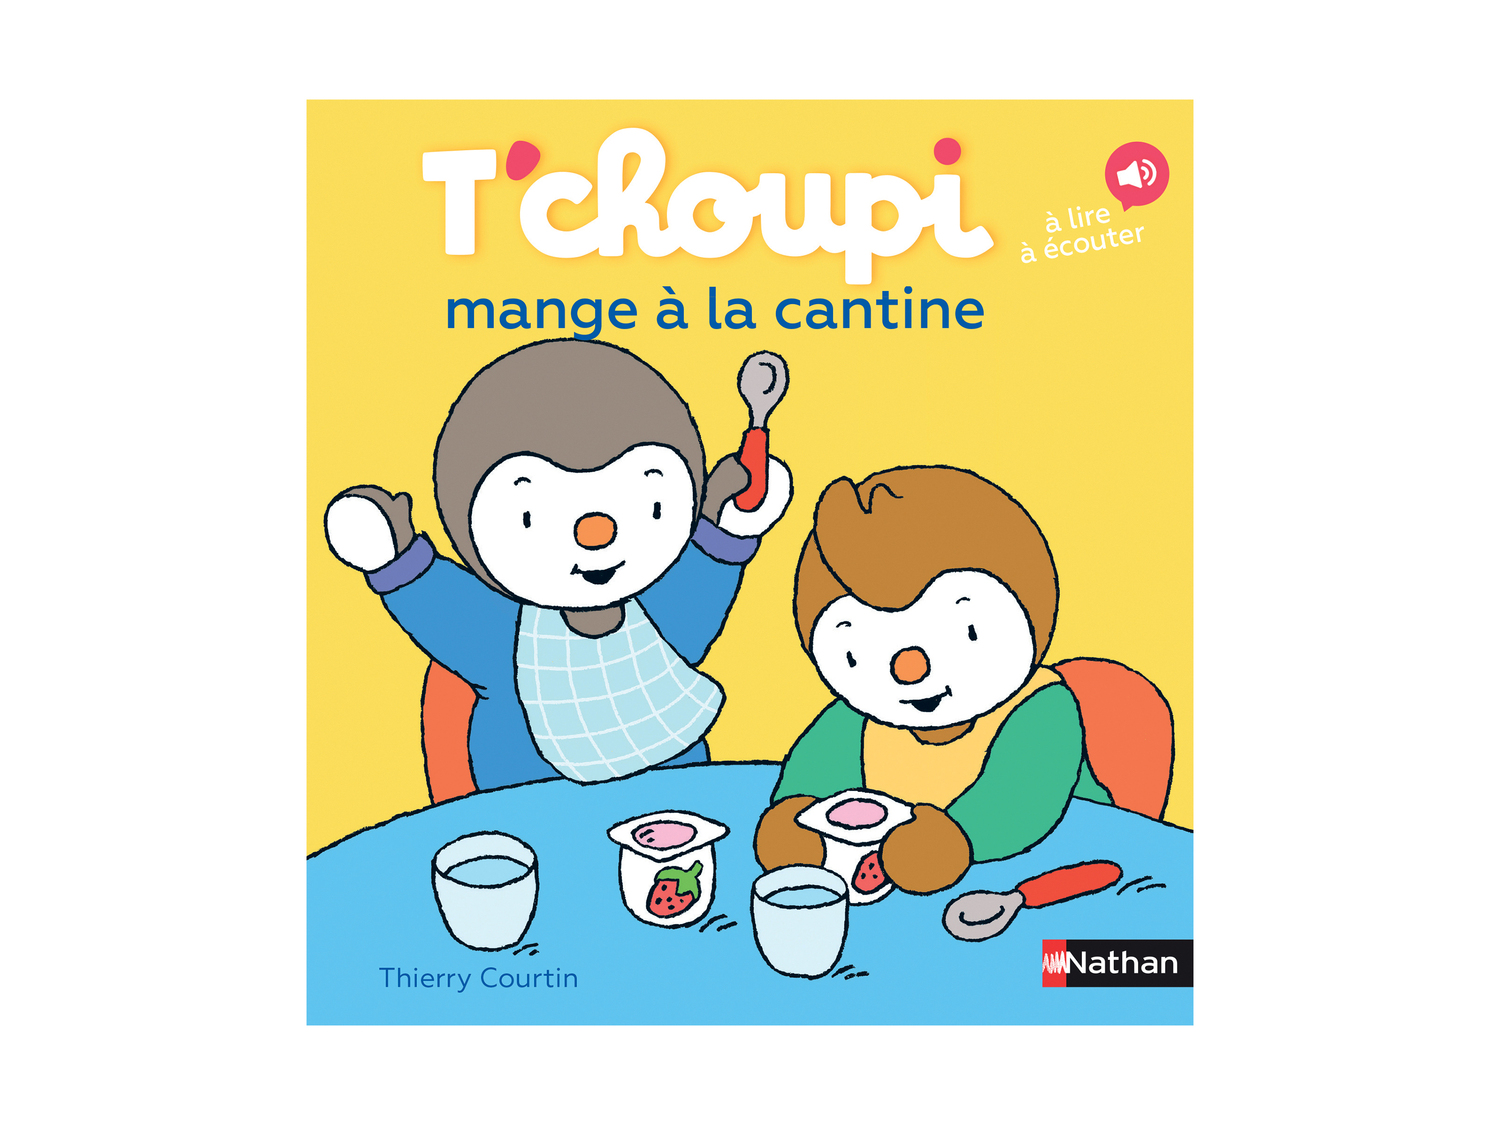 Livre Tchoupi , le prix 5.70 €  
-  Autres modèles disponibles dans nos supermarchés